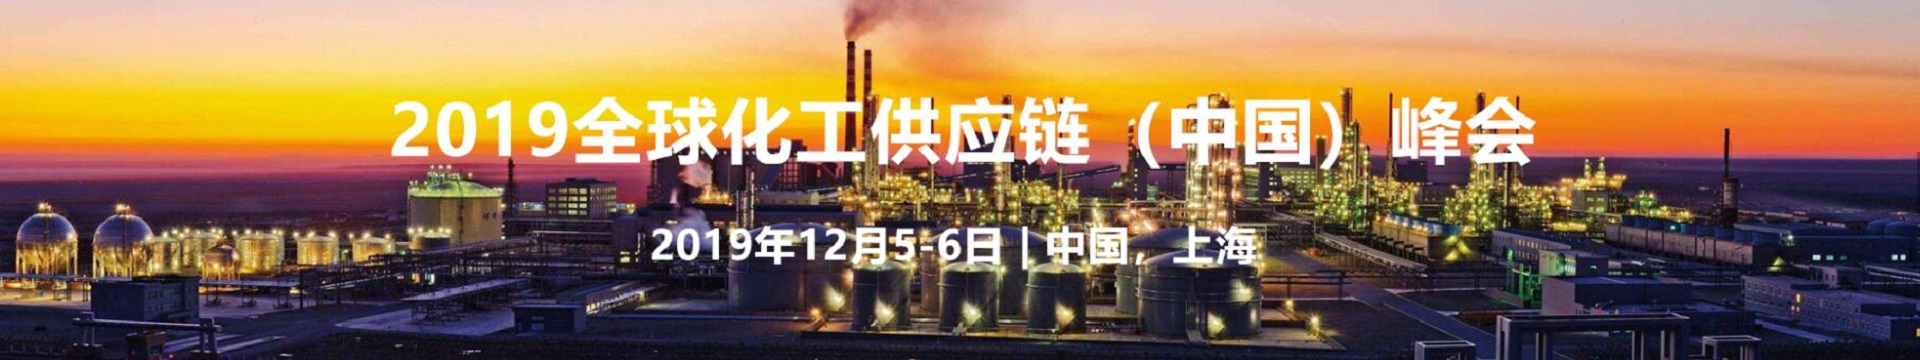 2019全球化工供应链（中国）峰会